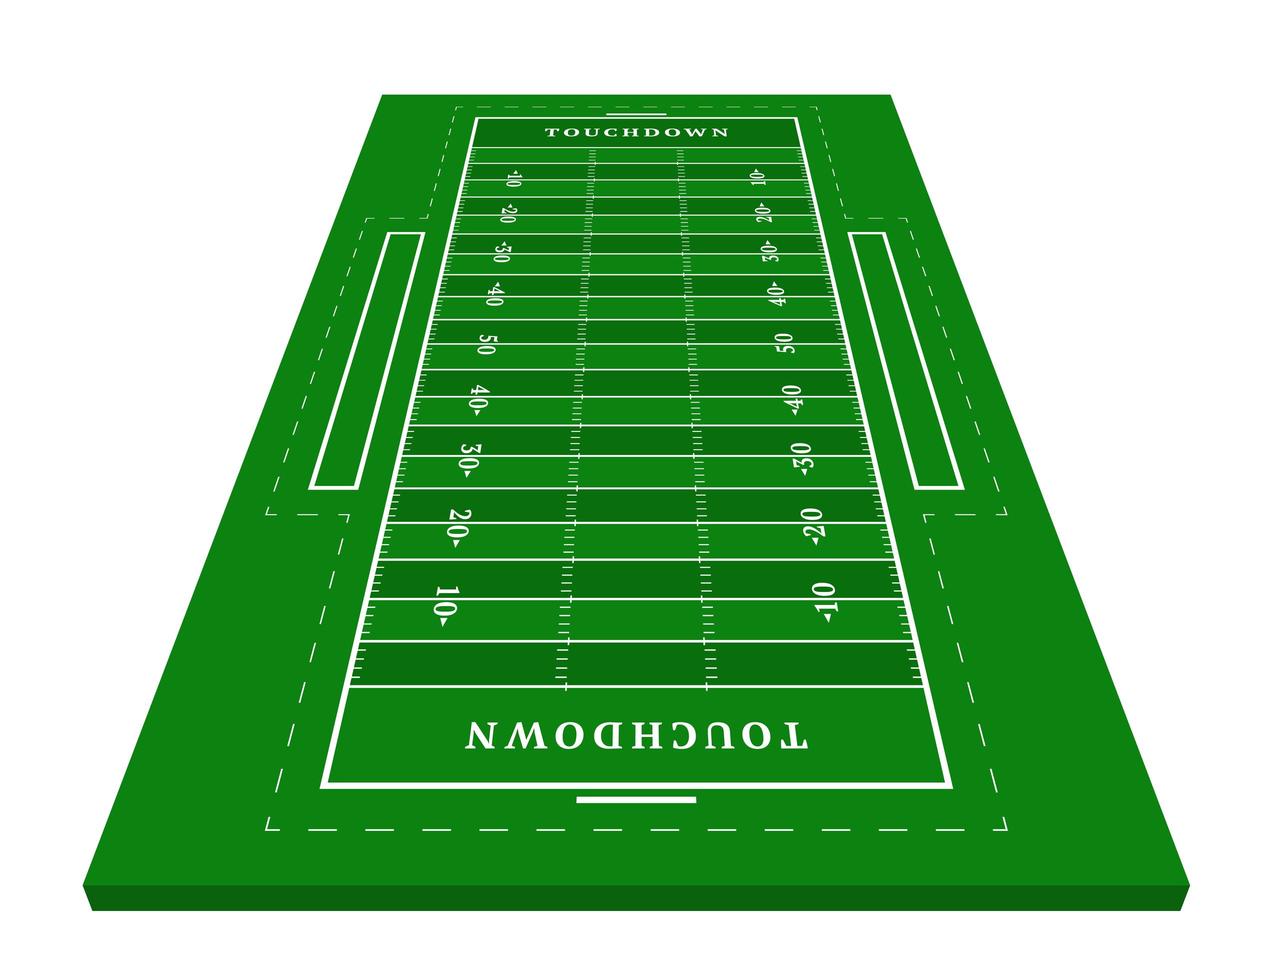 perspectief groen Amerikaans voetbalveld. uitzicht van voren. rugbyveld met regelsjabloon. vector illustratie stadion.